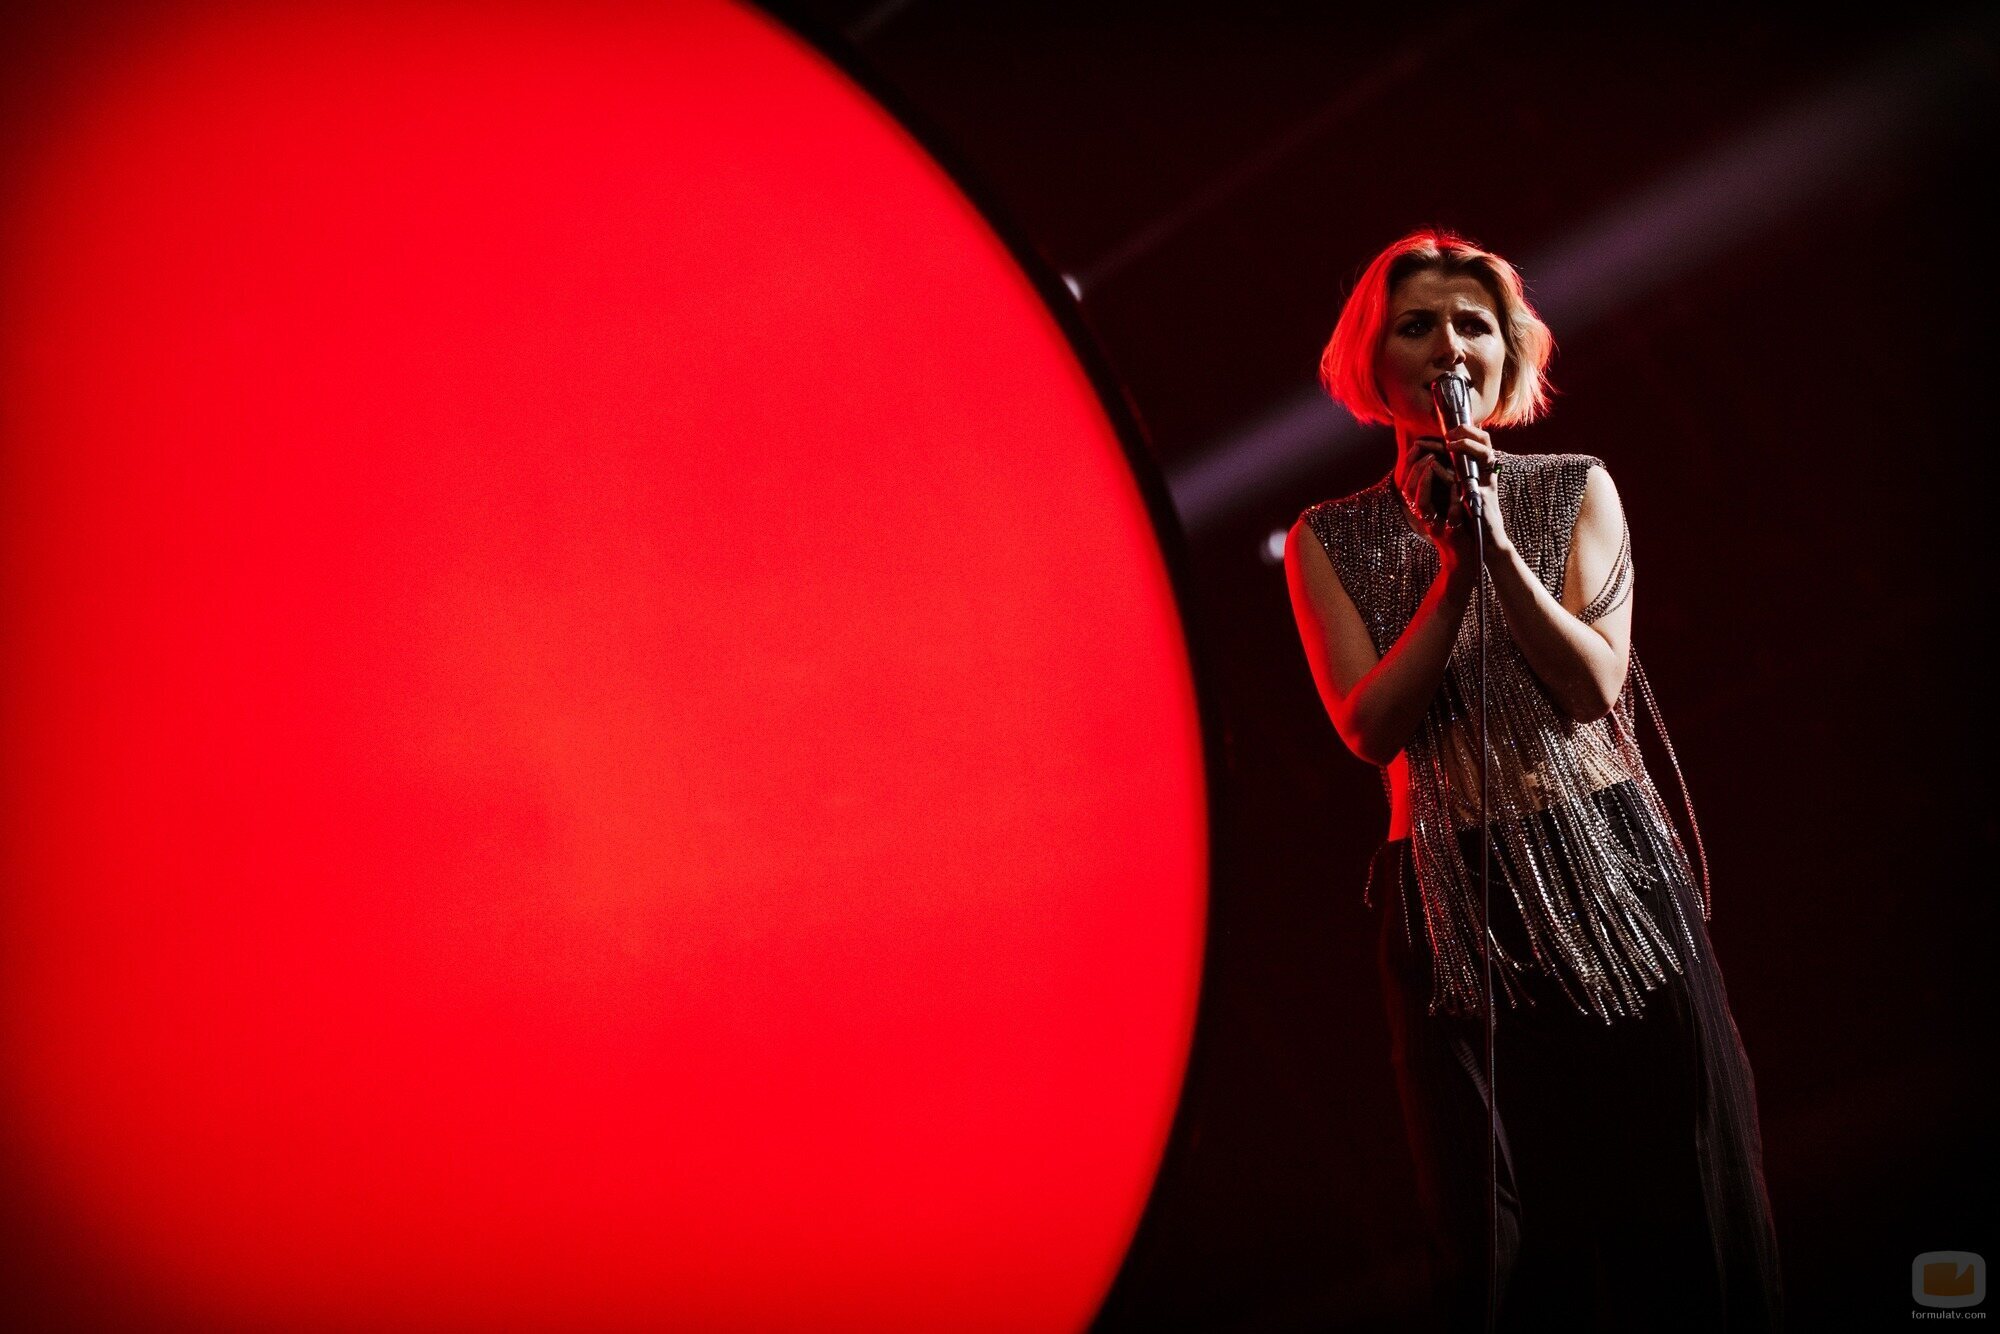 Cornelia Jackobs, representante de Suecia, en la final de Eurovisión 2022